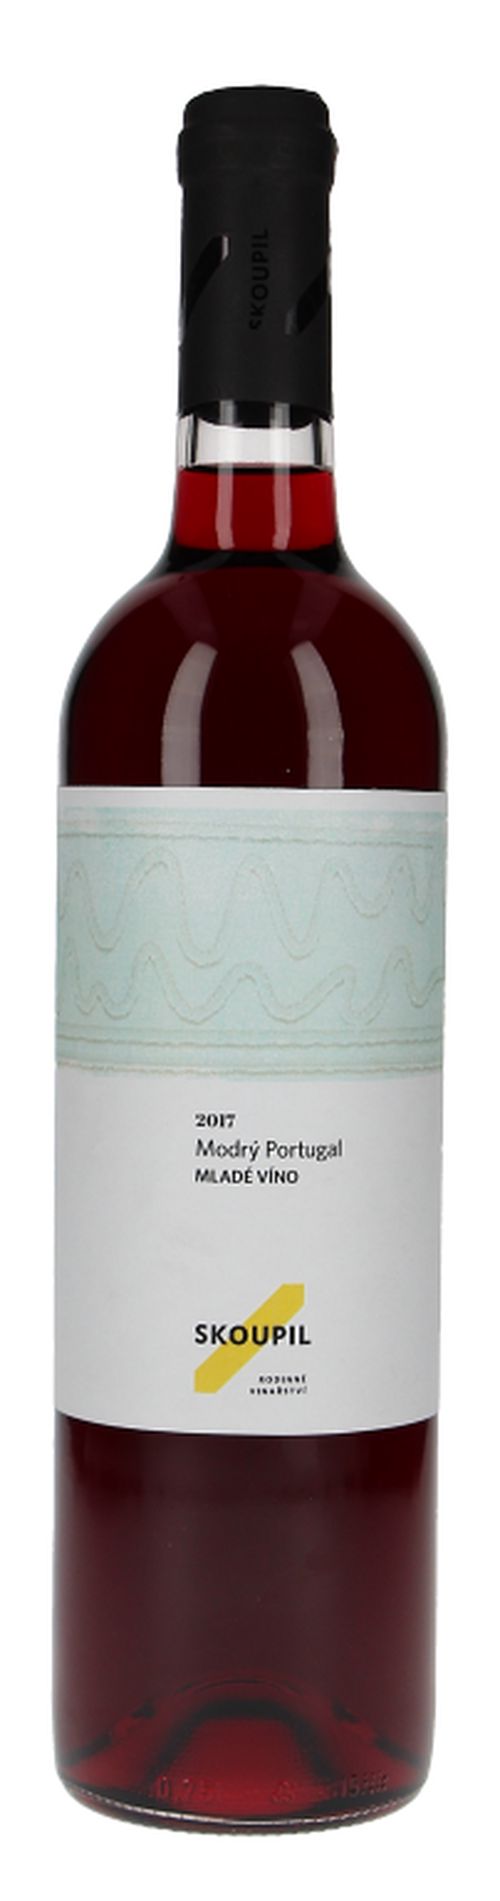 Skoupil SVATOMARTINSKÉ Modrý Portugal Moravské zemské víno 2020 0,75l 12%